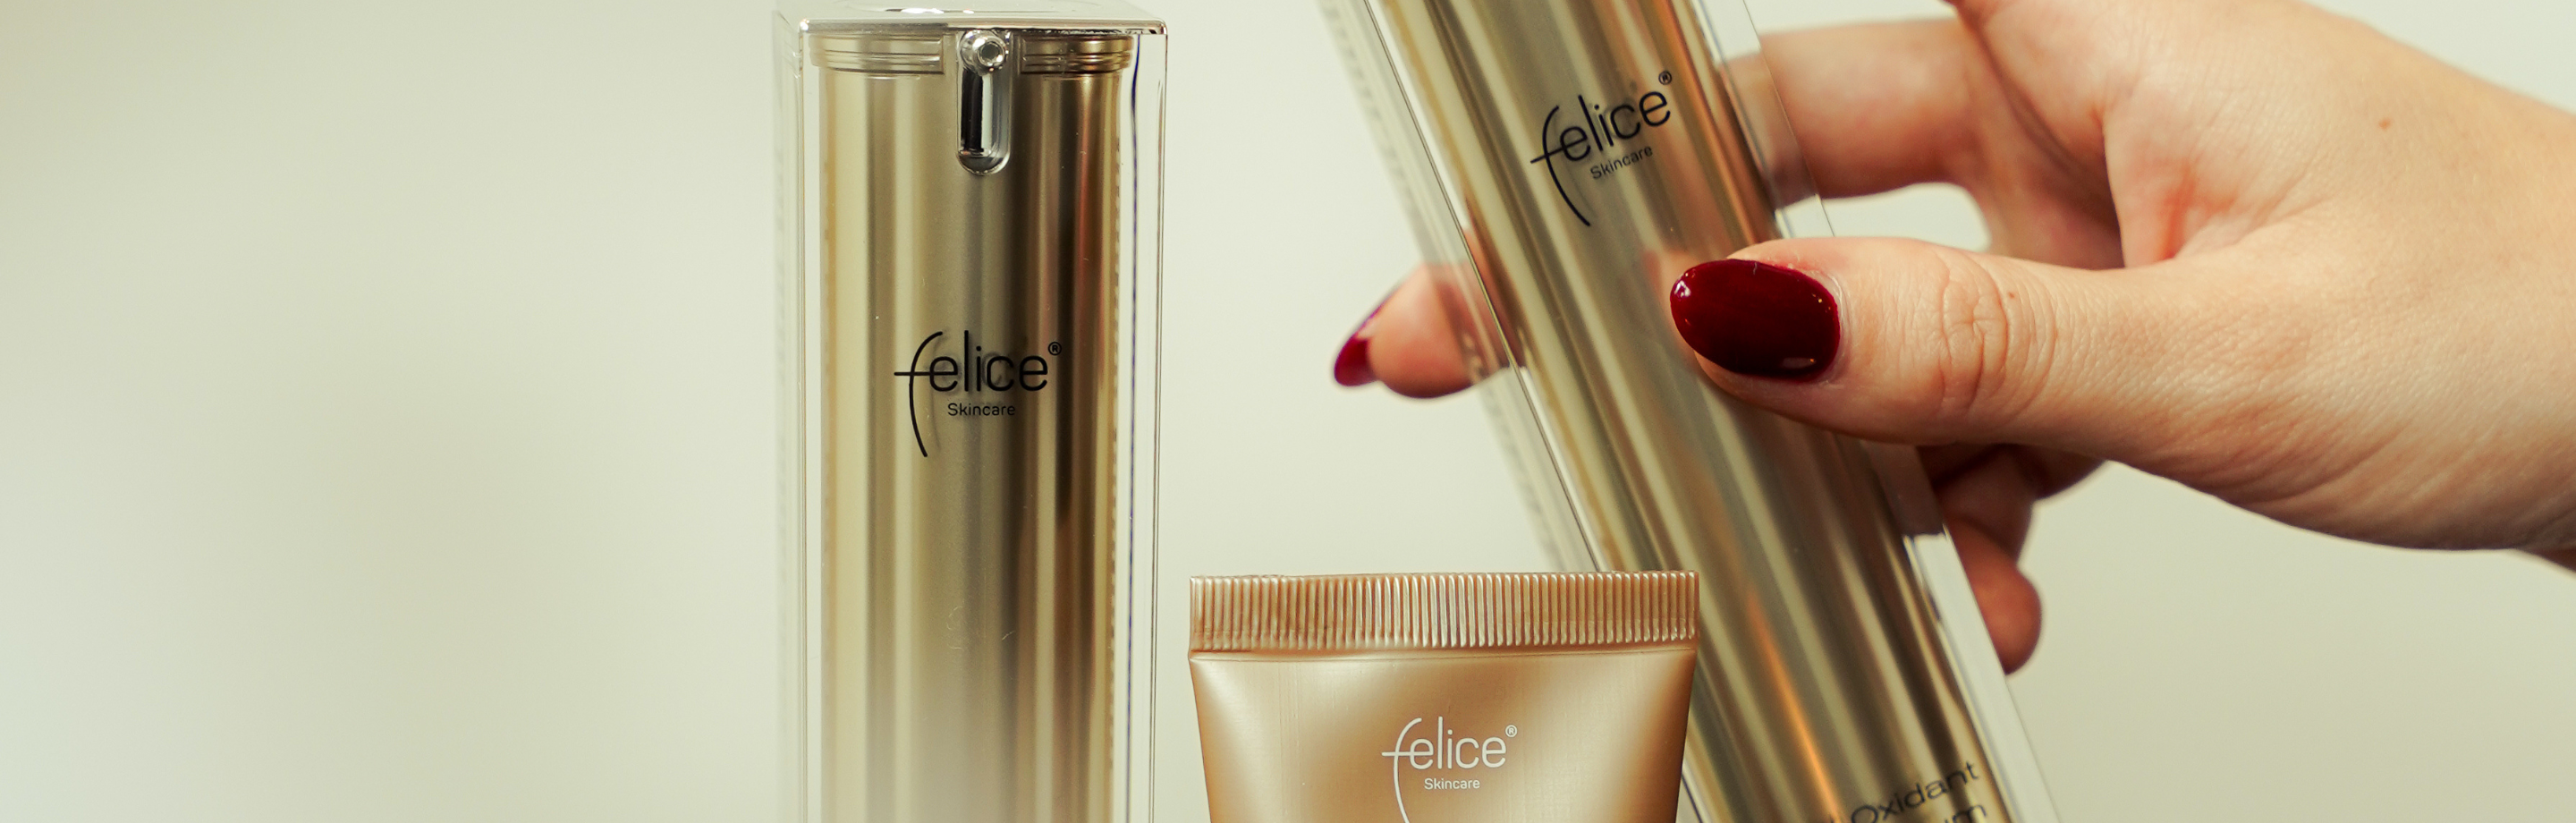 Felice Skincare - onze eigen huidverzorgingslijn